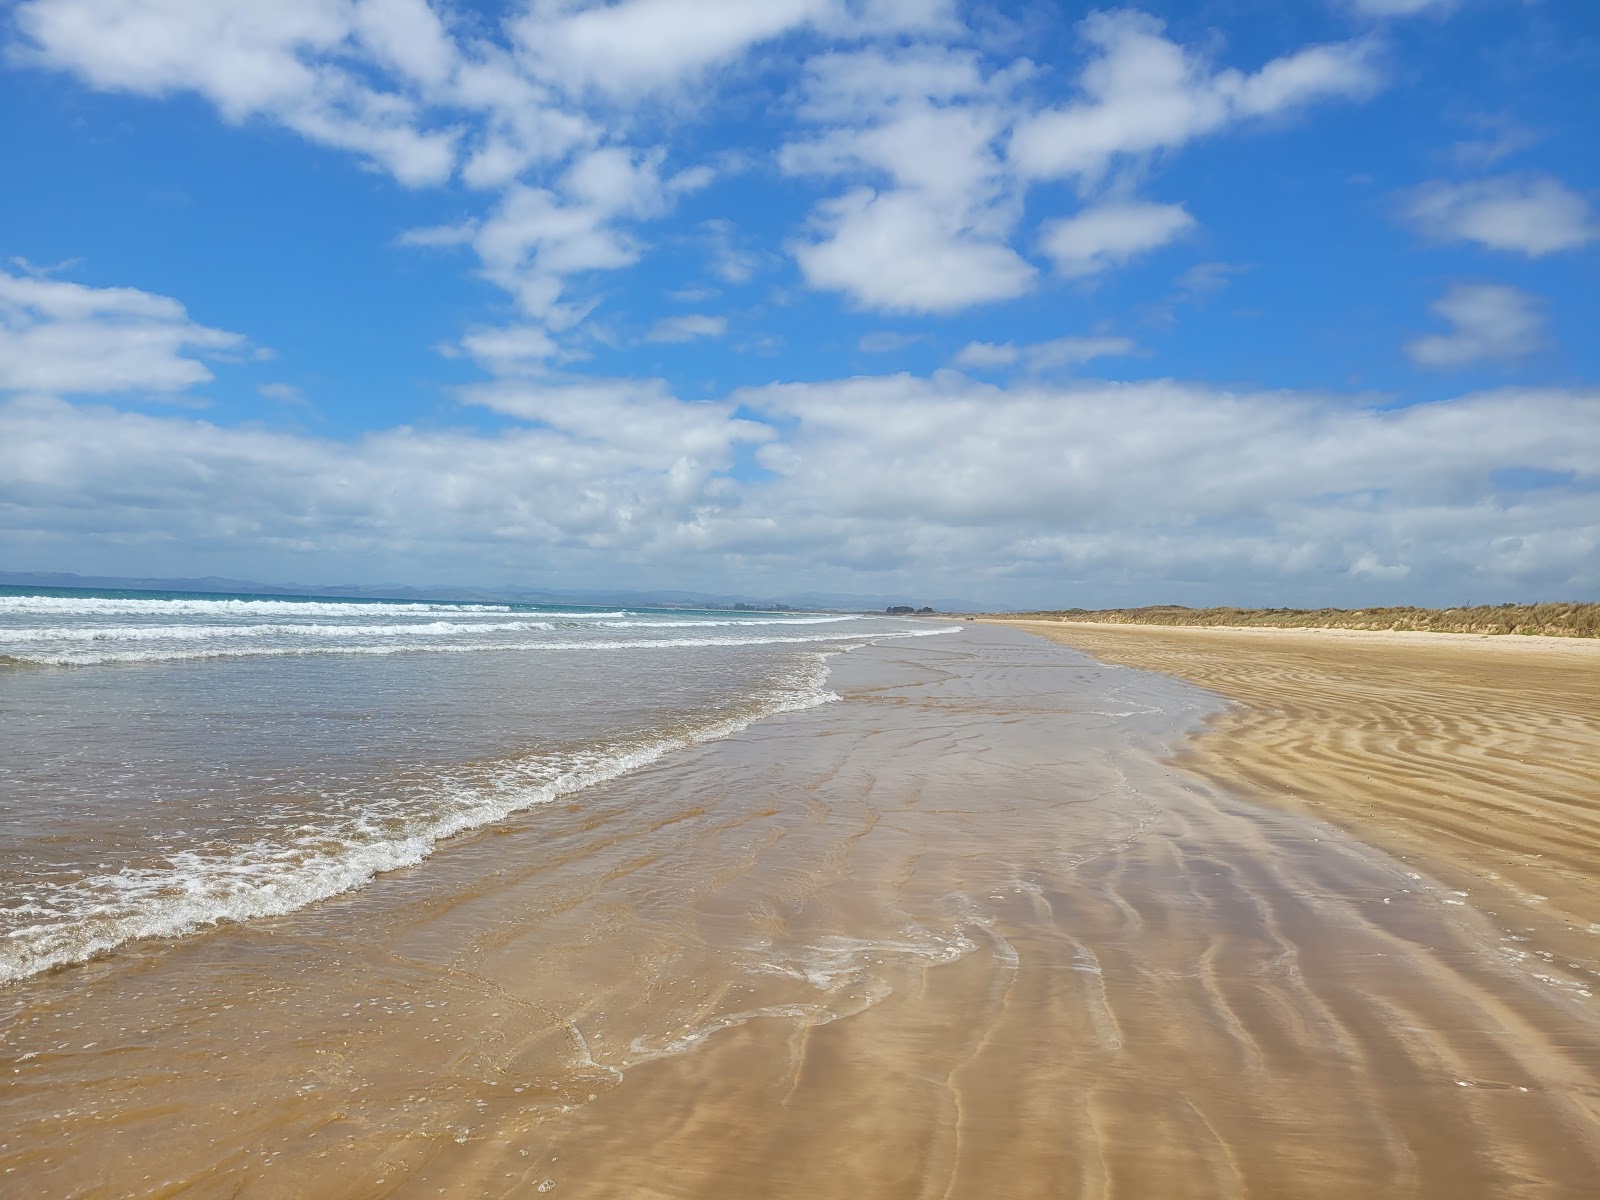 Fotografie cu Tokerau beach cu o suprafață de nisip strălucitor